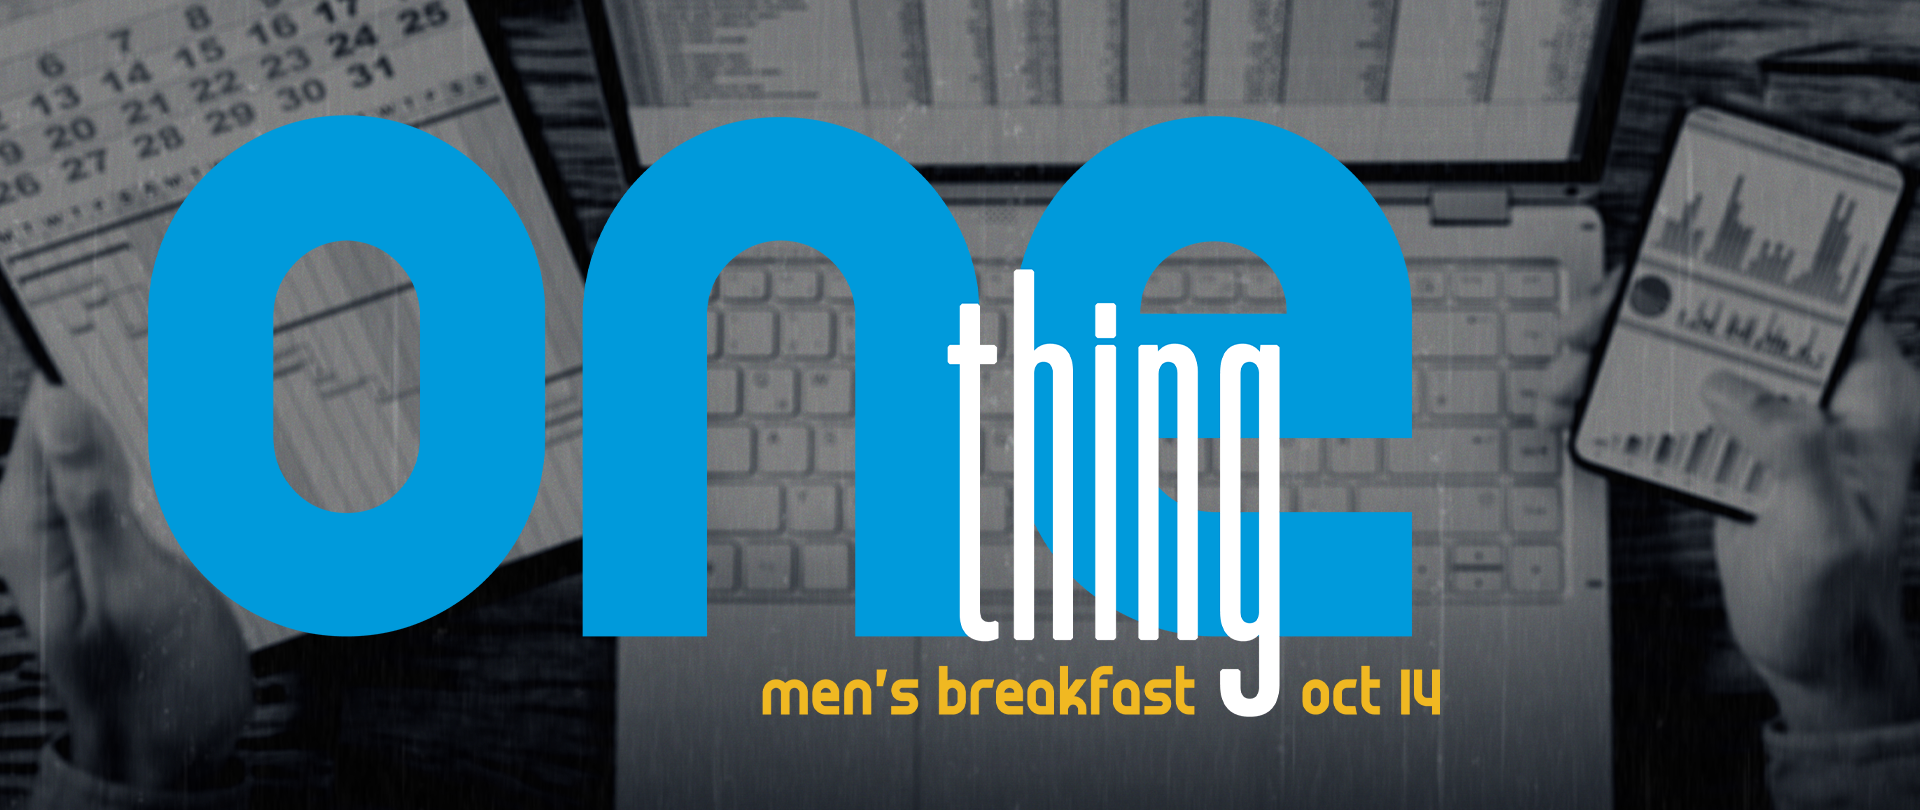 Men's Breakfast
Saturday, October 14
Register now!
